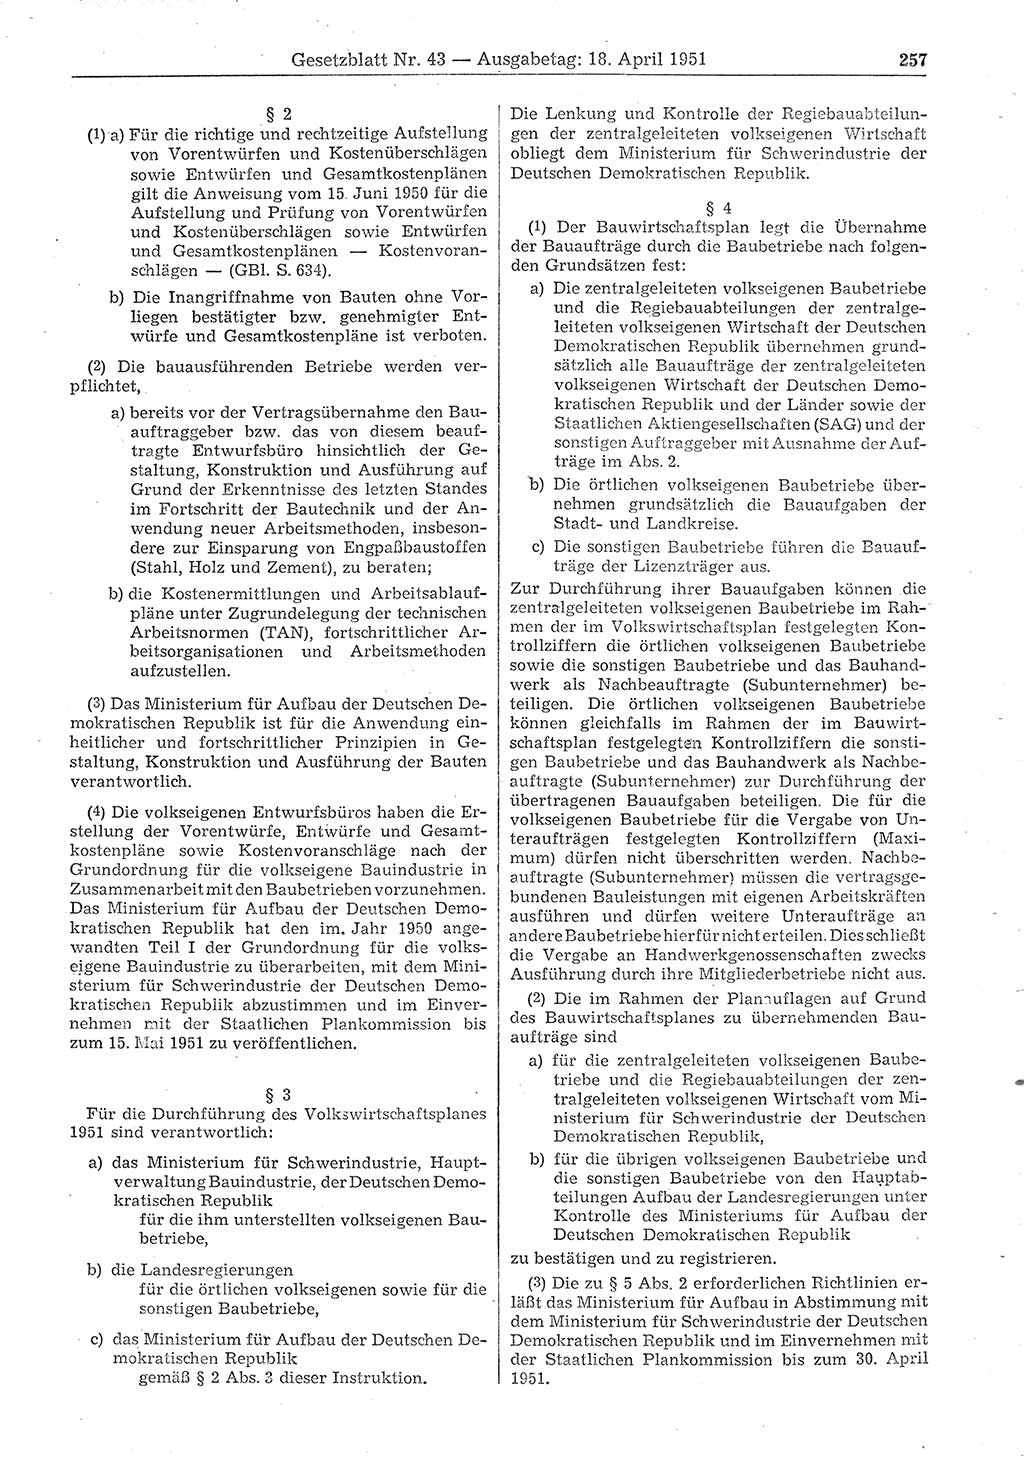 Gesetzblatt (GBl.) der Deutschen Demokratischen Republik (DDR) 1951, Seite 257 (GBl. DDR 1951, S. 257)